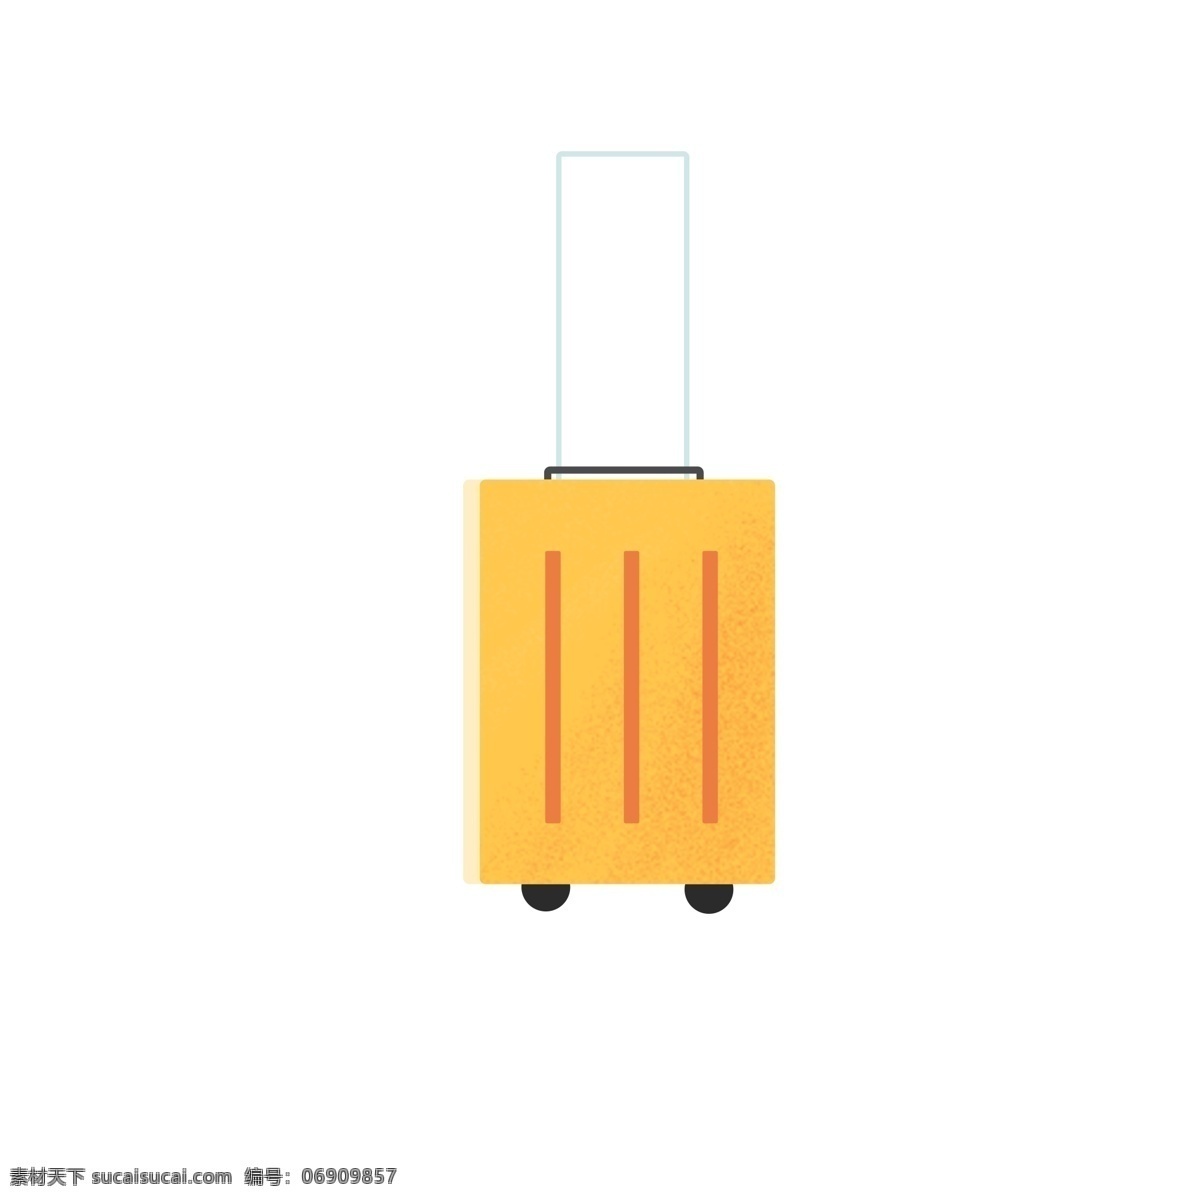 黄色 旅行 包包 免 抠 图 箱包 旅行包包 卡通包包 生活用品 居家旅行 装东西的箱子 免抠图